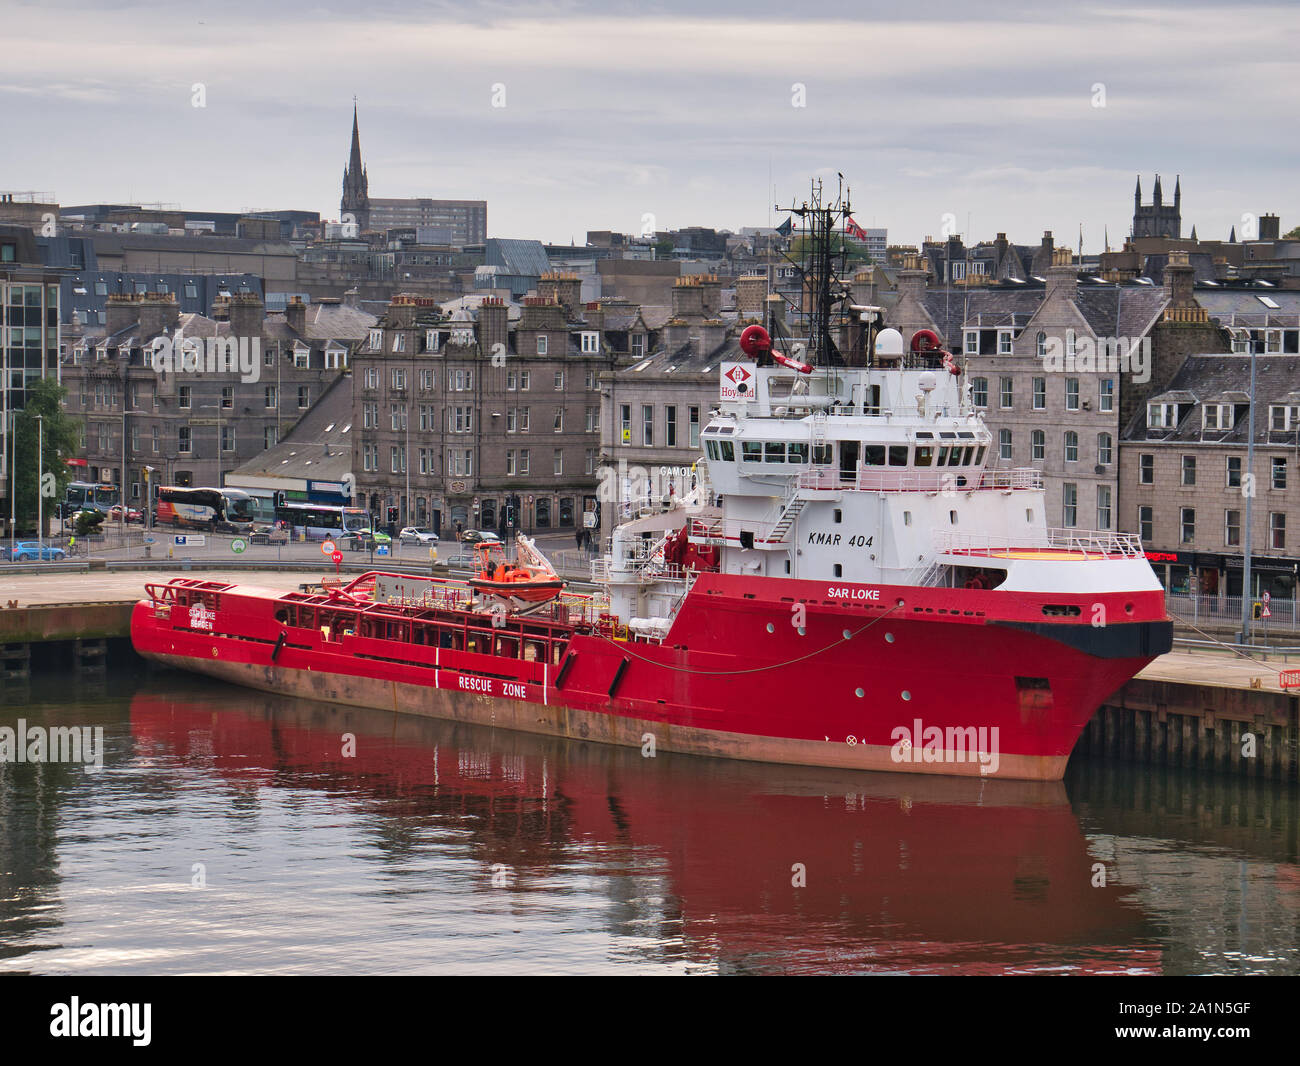 Sar 1386-1644 Anker im Hafen von Aberdeen, Schottland, Großbritannien - dieses Schiff ist eine Offshore Tug/Schiff zur Versorgung im Jahr 1998 gebaut. Stockfoto